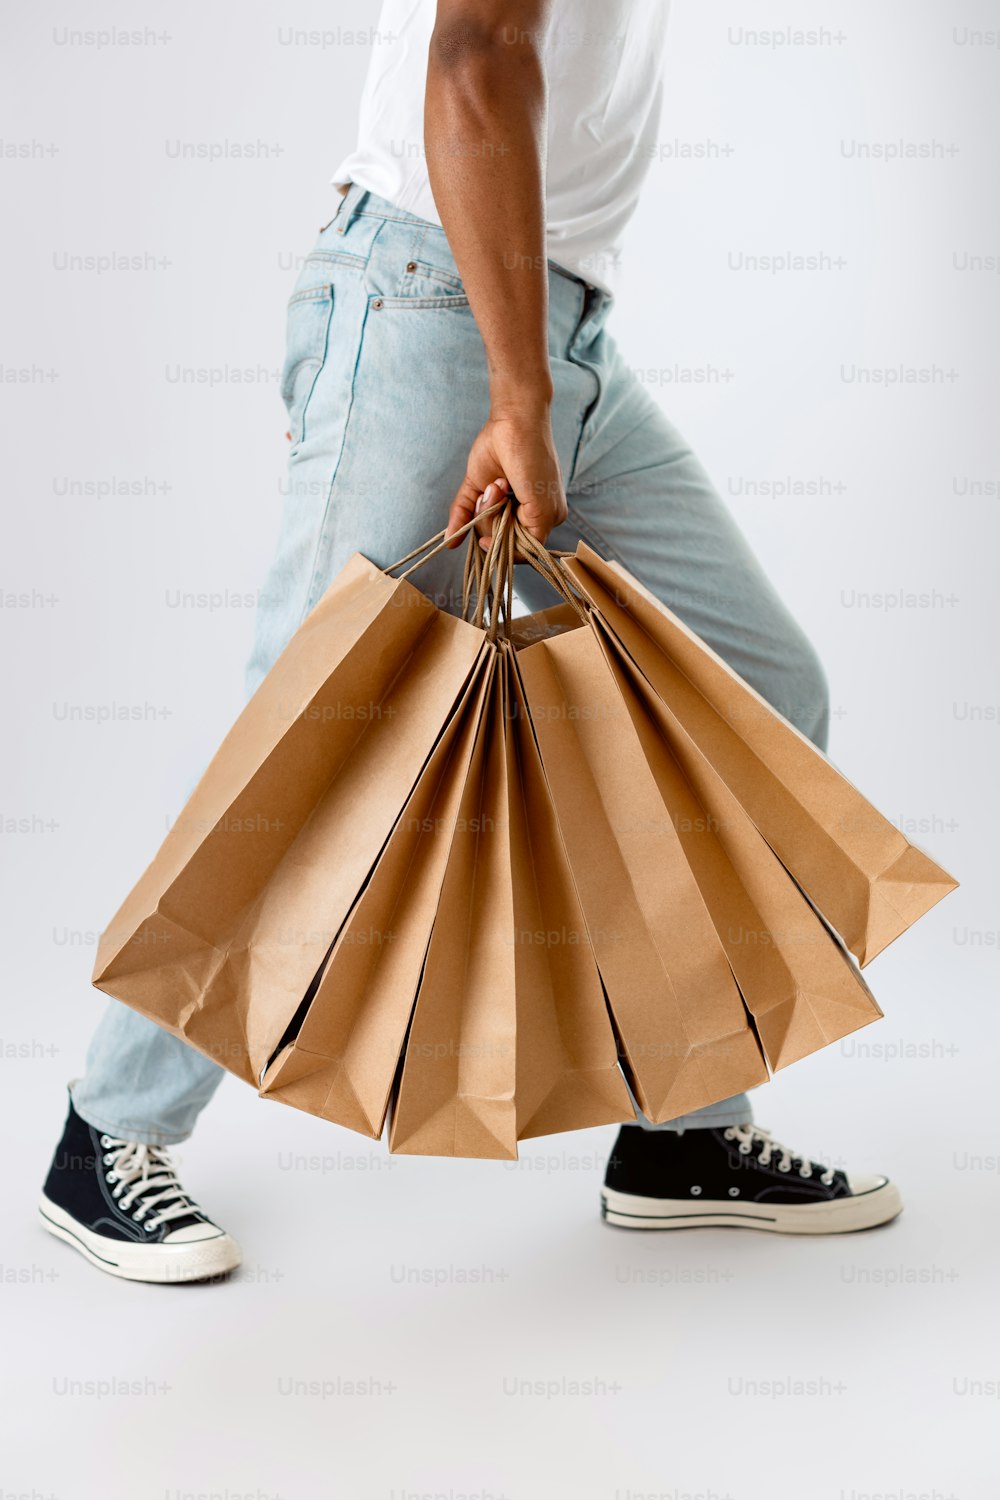 Un hombre sosteniendo una bolsa de papel marrón en sus manos